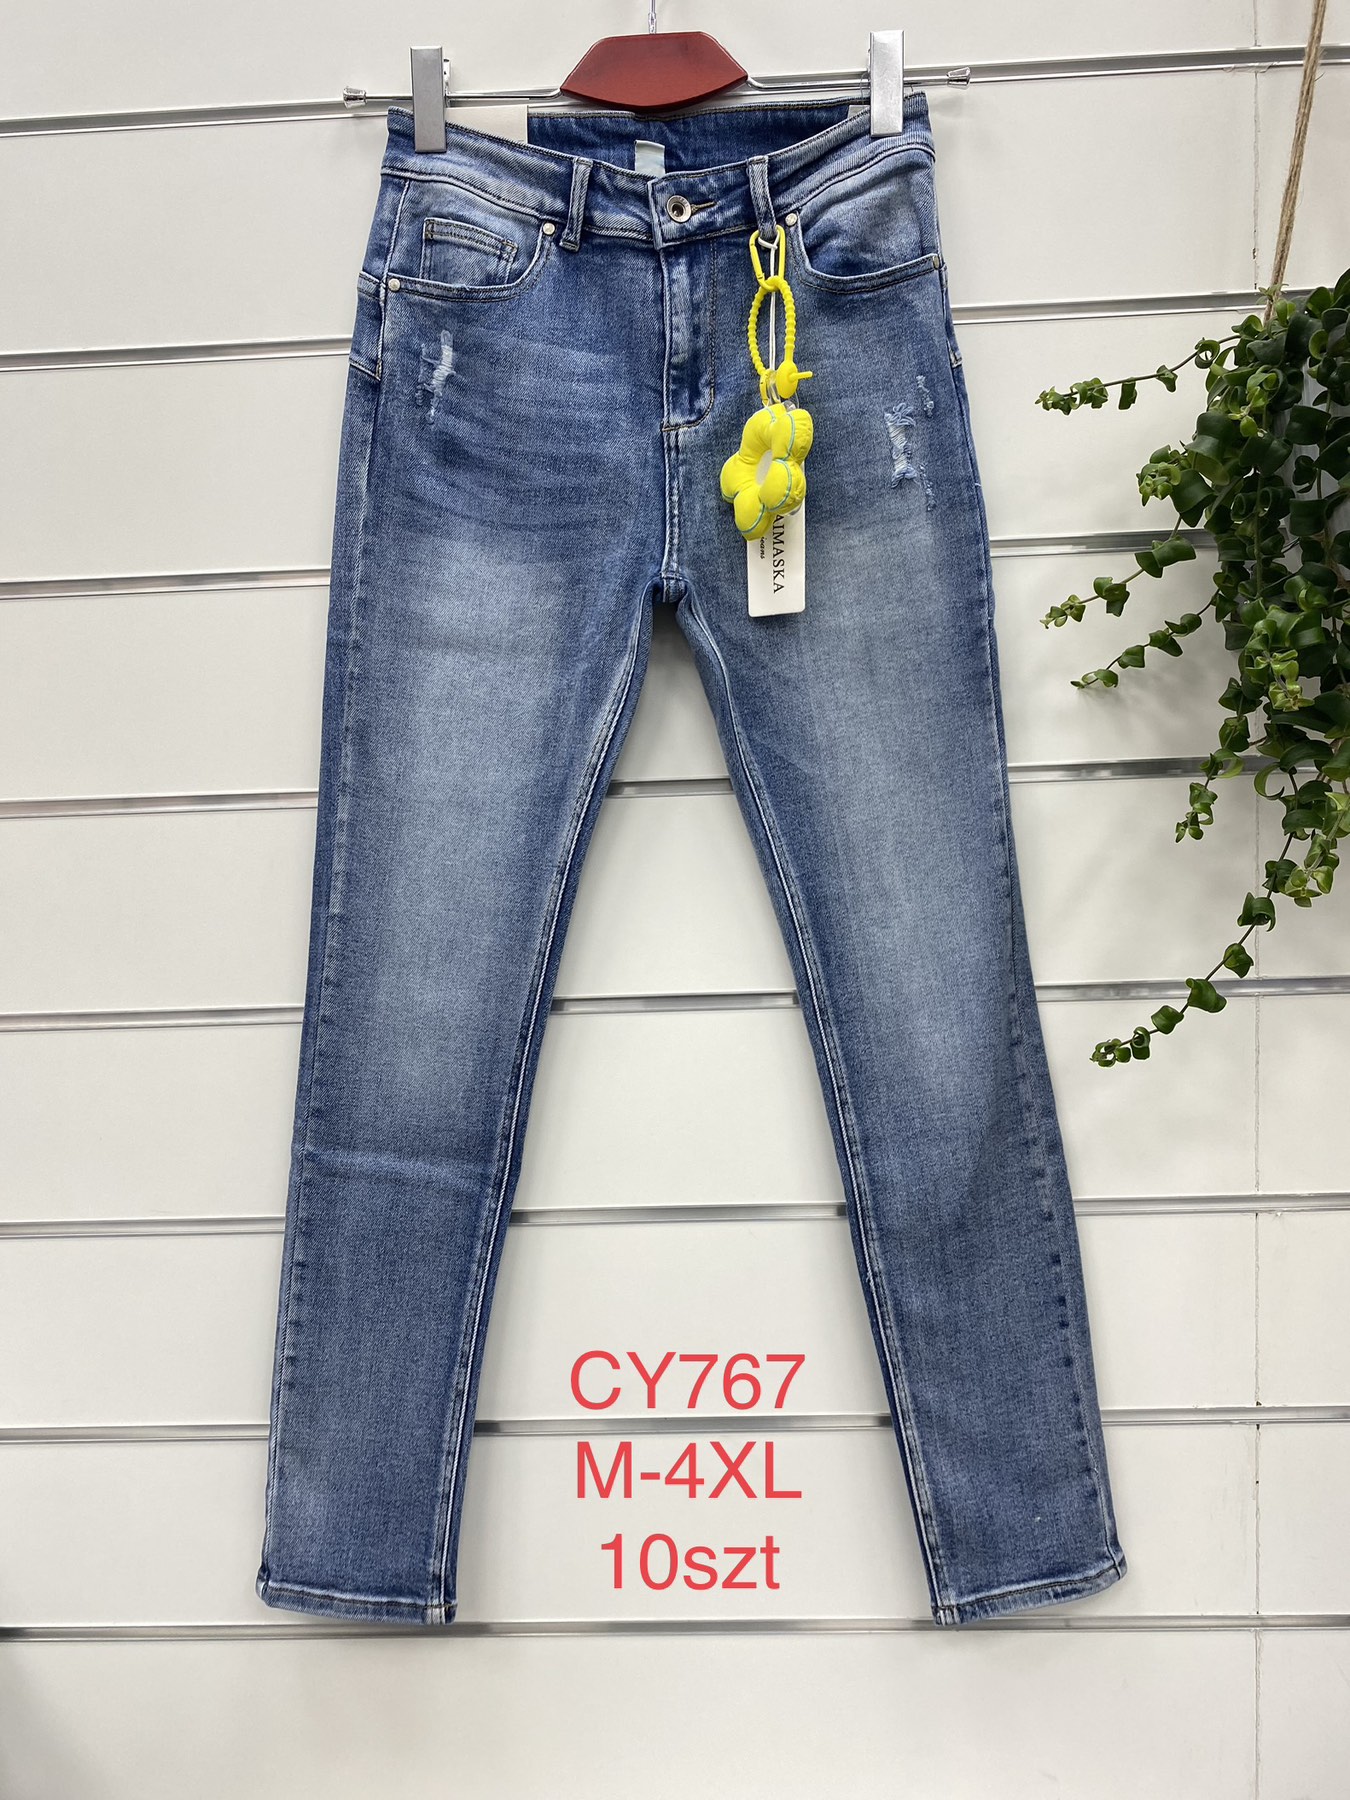 Spodnie damskie jeans Roz  M-4XL.  1 kolor . Paczka 10szt